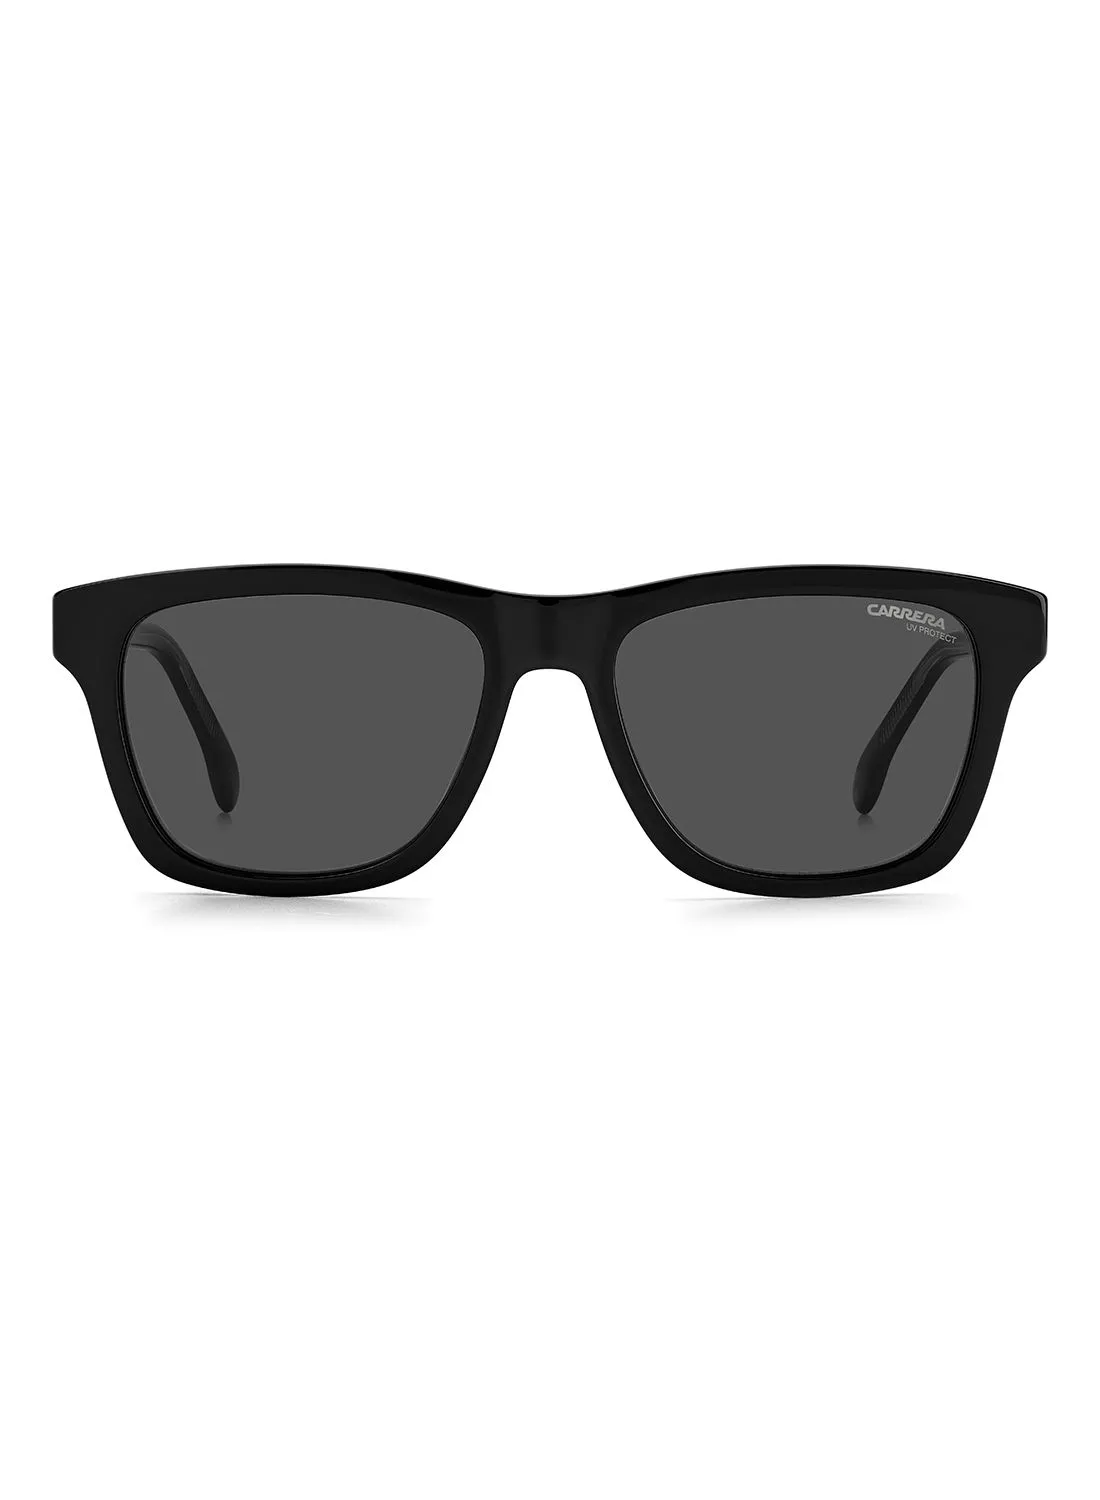 نظارة CARRERA للرجال مستطيلة / مربعة CARRERA 266 / S BLACK 53